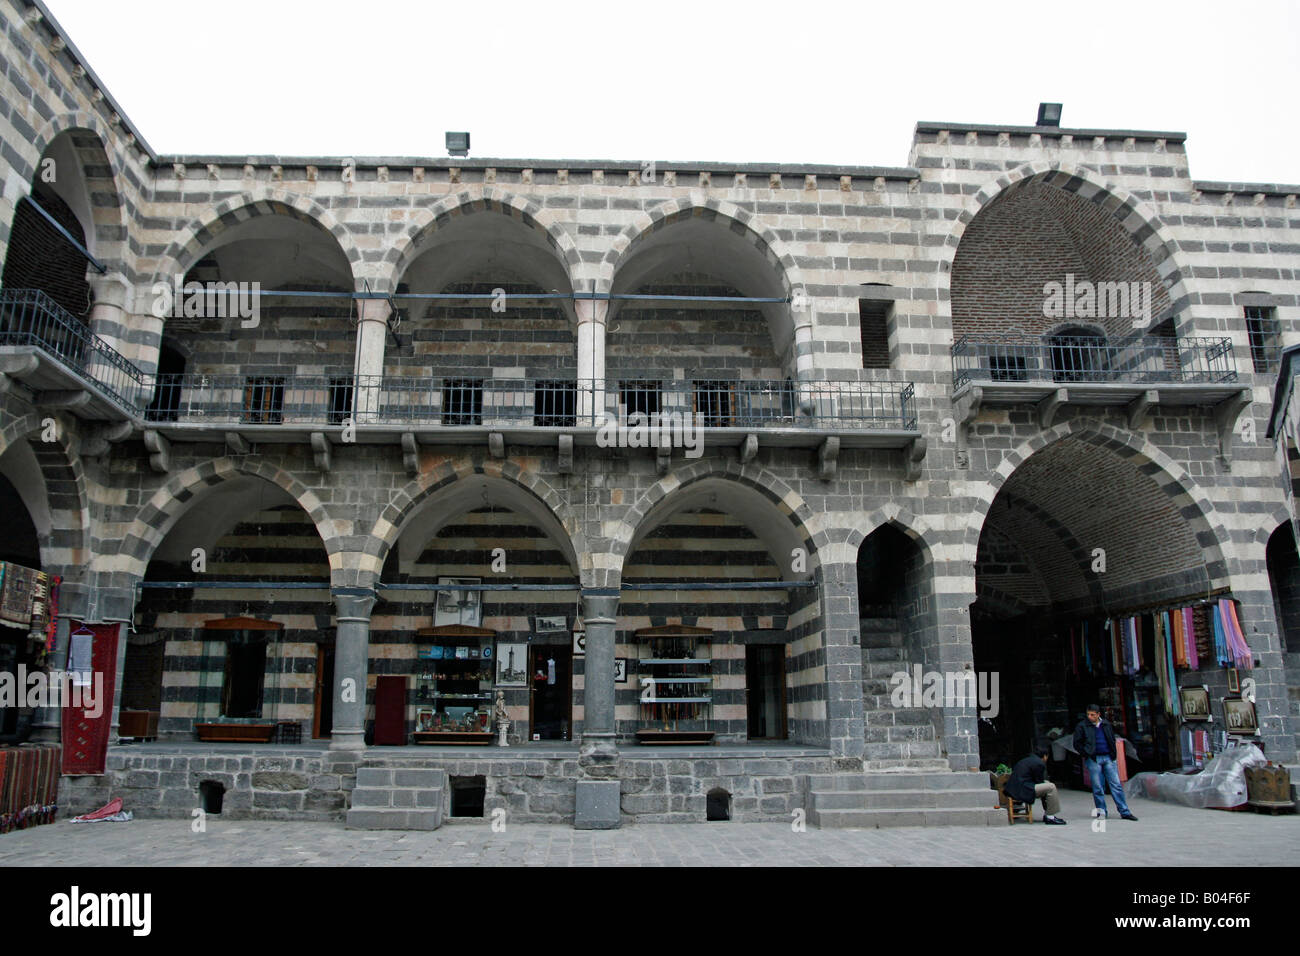 Hasan Pascha Hani eine Karawanserei, welche jetzt Gastgeber Diyarbakir, Türkei Souvenirläden Stockfoto